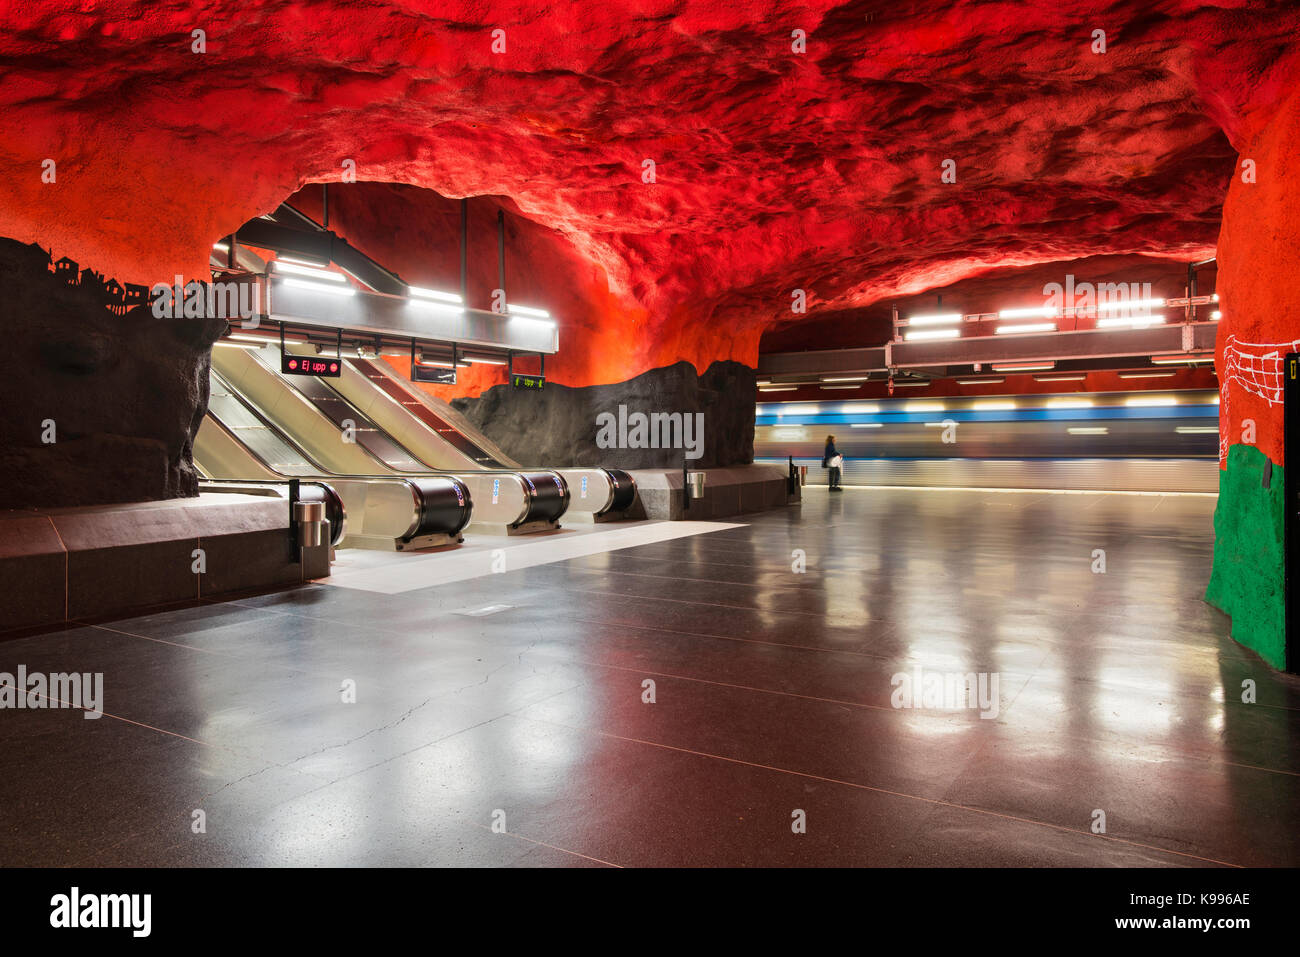 Solna Centrum stazione della metropolitana di Stoccolma, o T-Bana, in Svezia. La metropolitana di Stoccolma è considerata la più lunga del museo d'arte nel mondo. Foto Stock